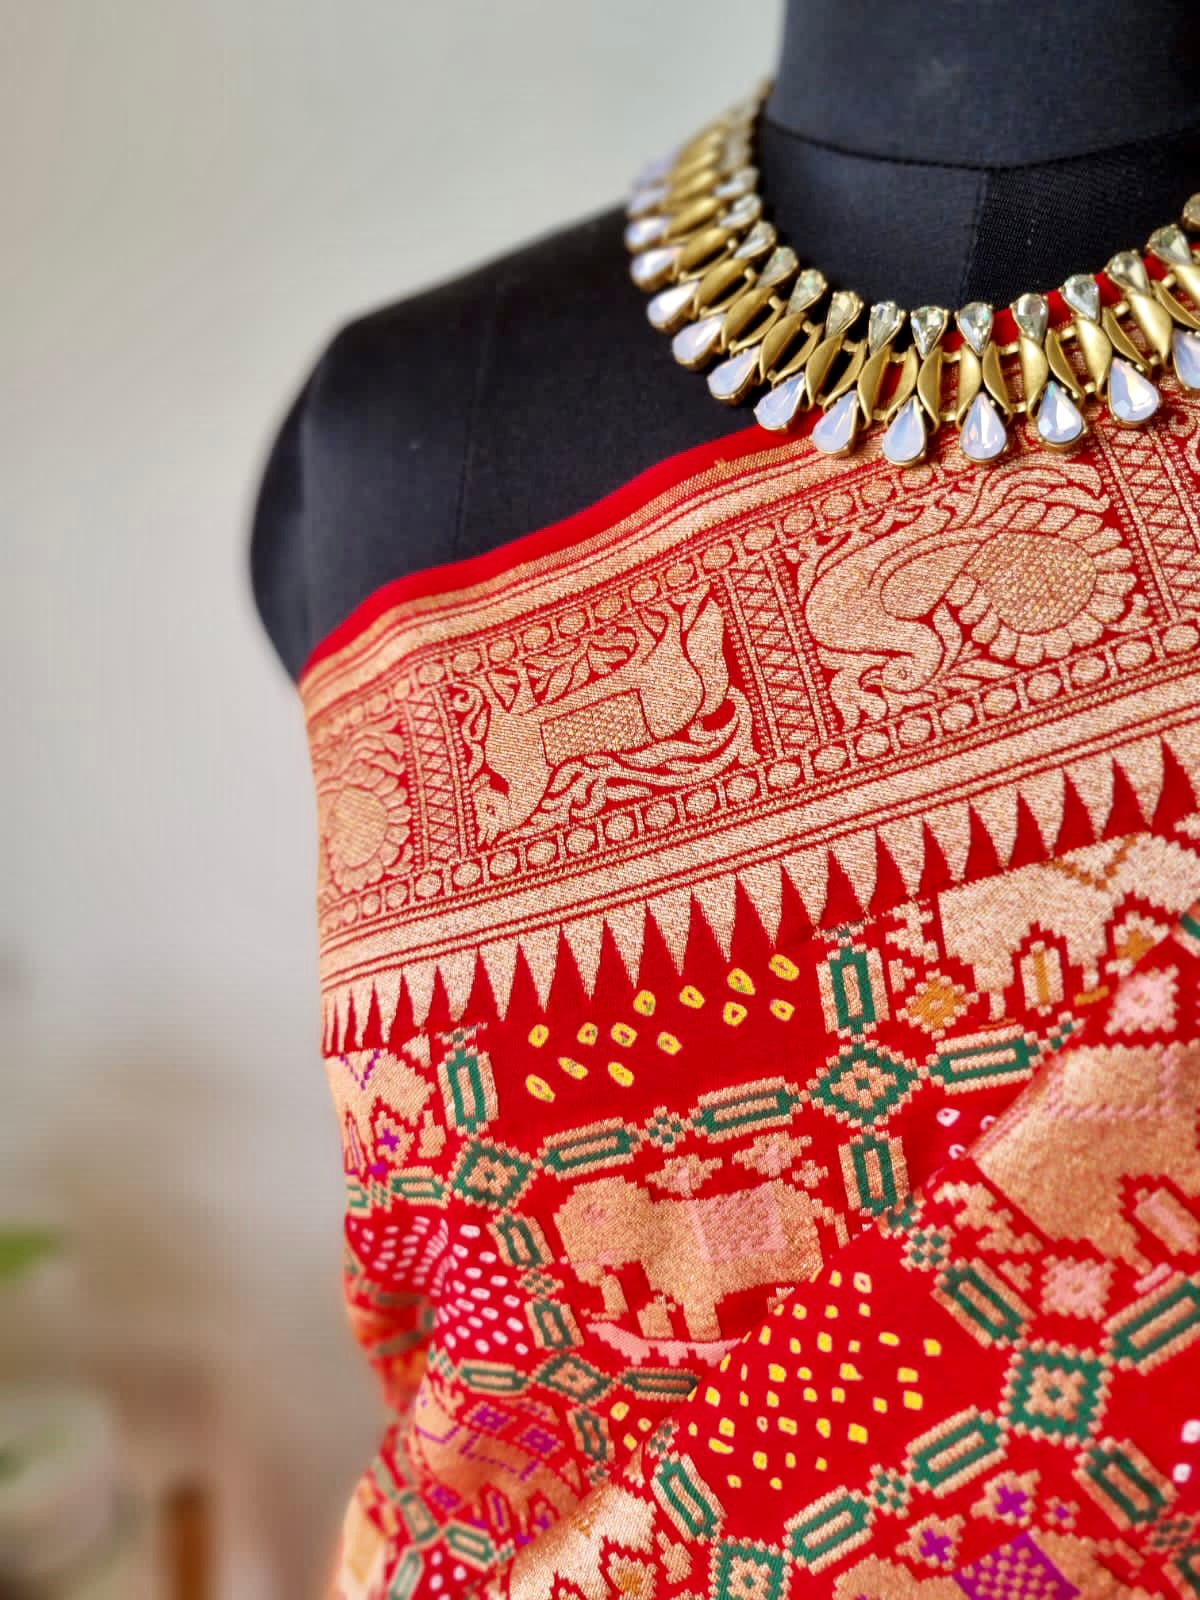 Ravishing Red Handloom Georgette Banarsi Bandhani Saree (NO BLOUSE)